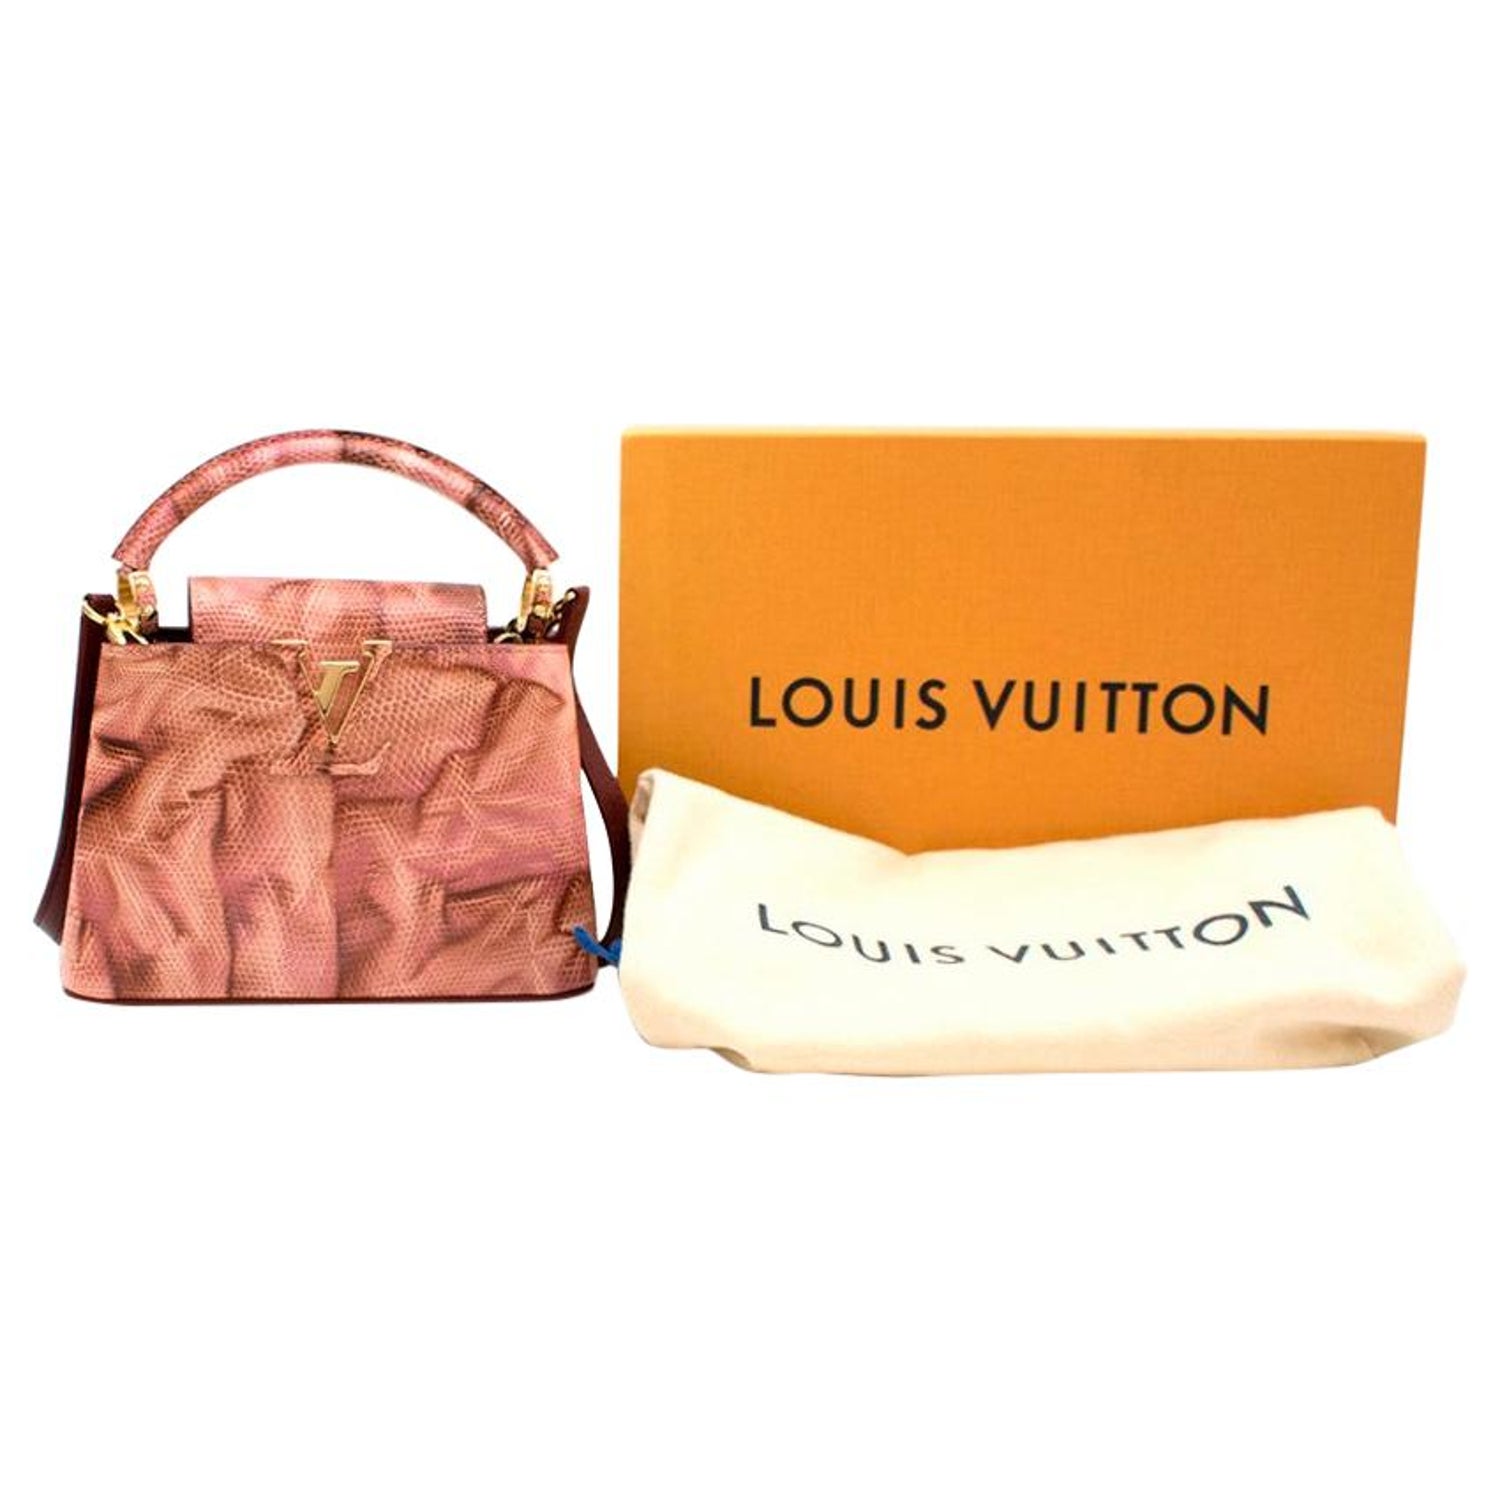 Louis Vuitton - Capucines Mini Bag - Pink - White Quartz - GHW